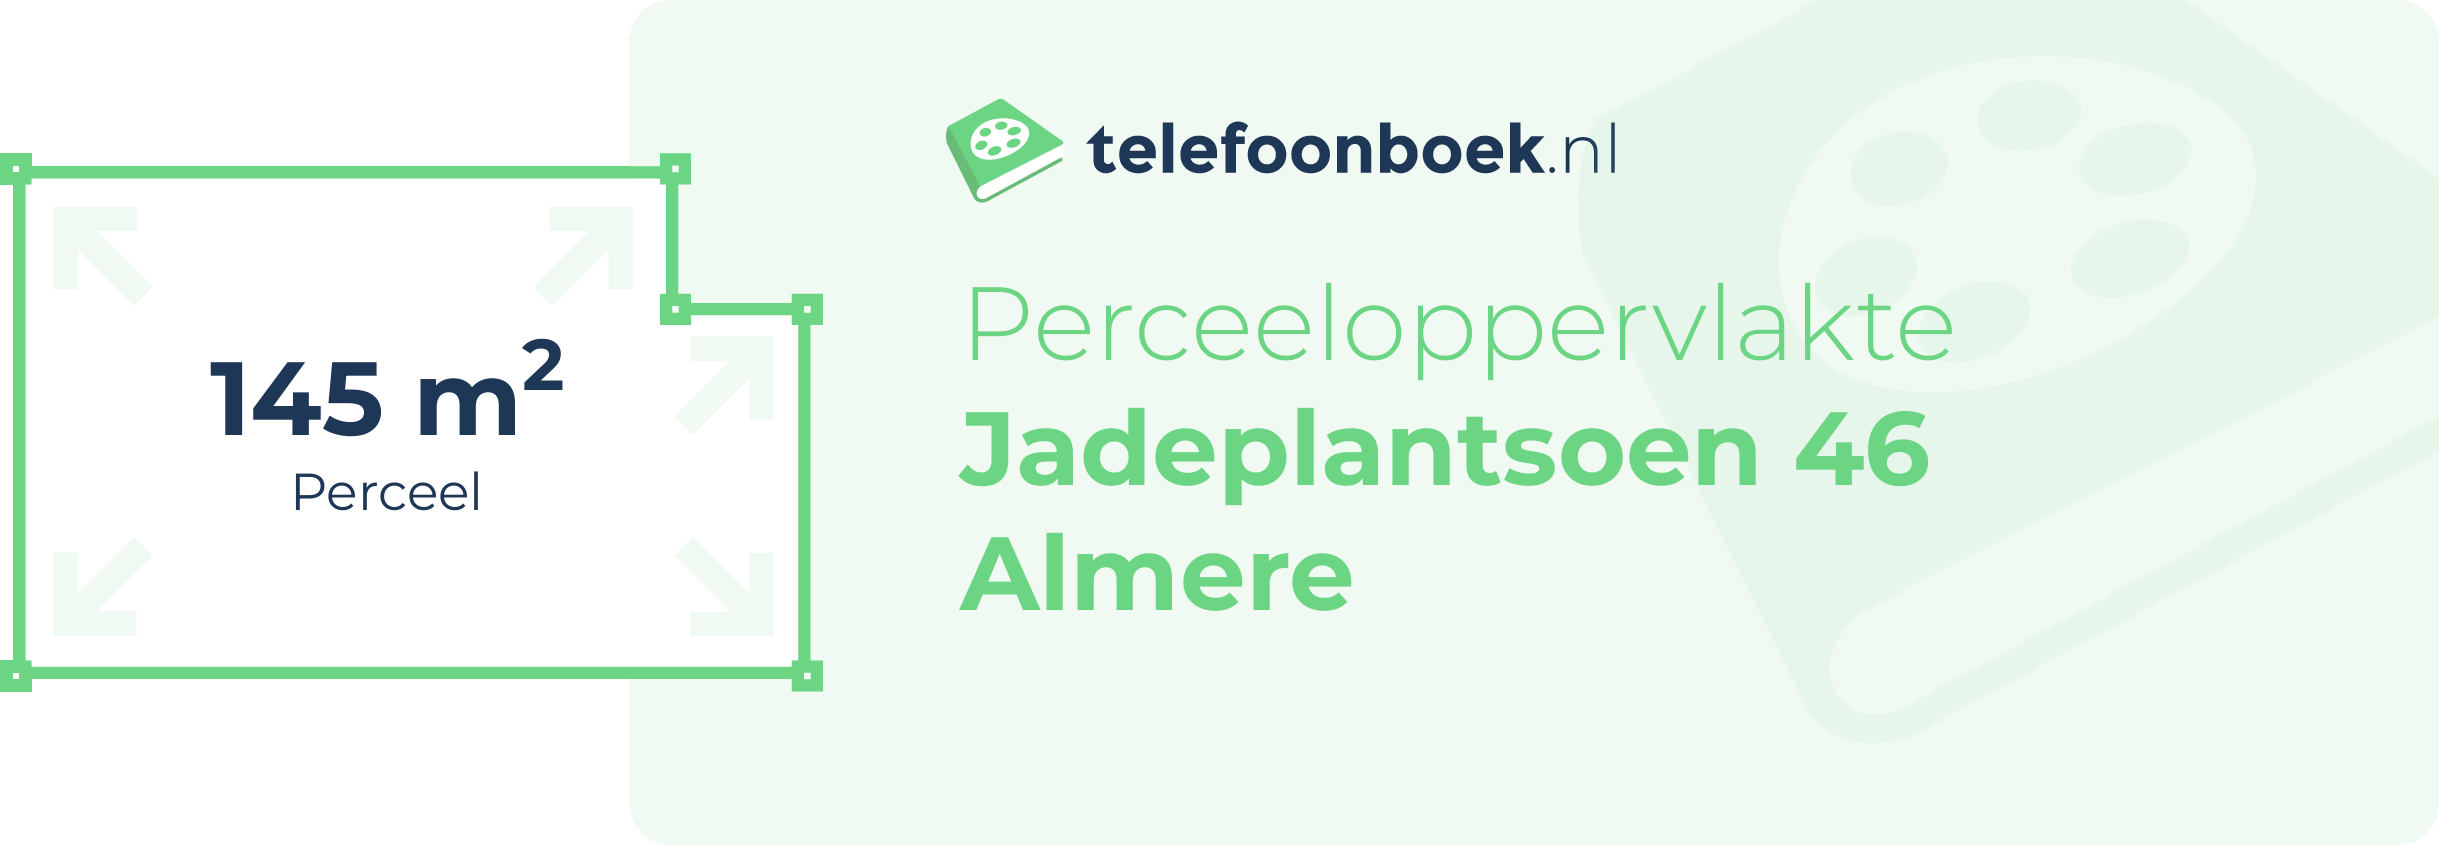 Perceeloppervlakte Jadeplantsoen 46 Almere